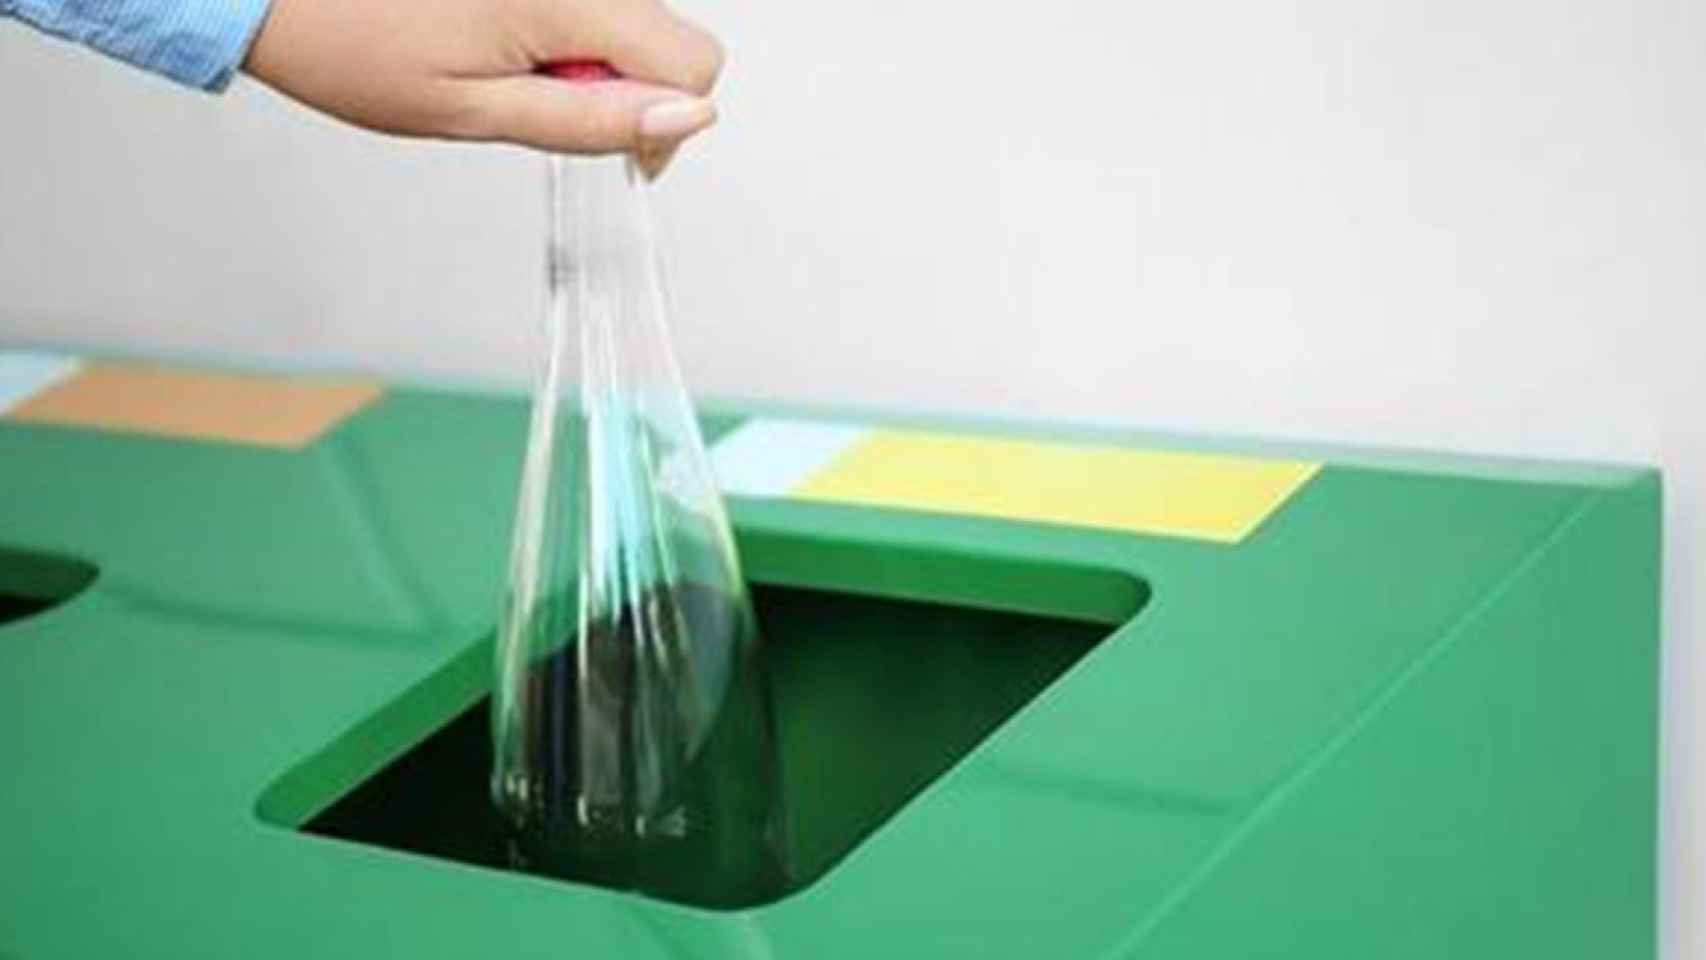 Una persona recicla una botella de plástico, en un comportamiento sostenible como el que la Agència de Residus de Catalunya quiere premiar / EP